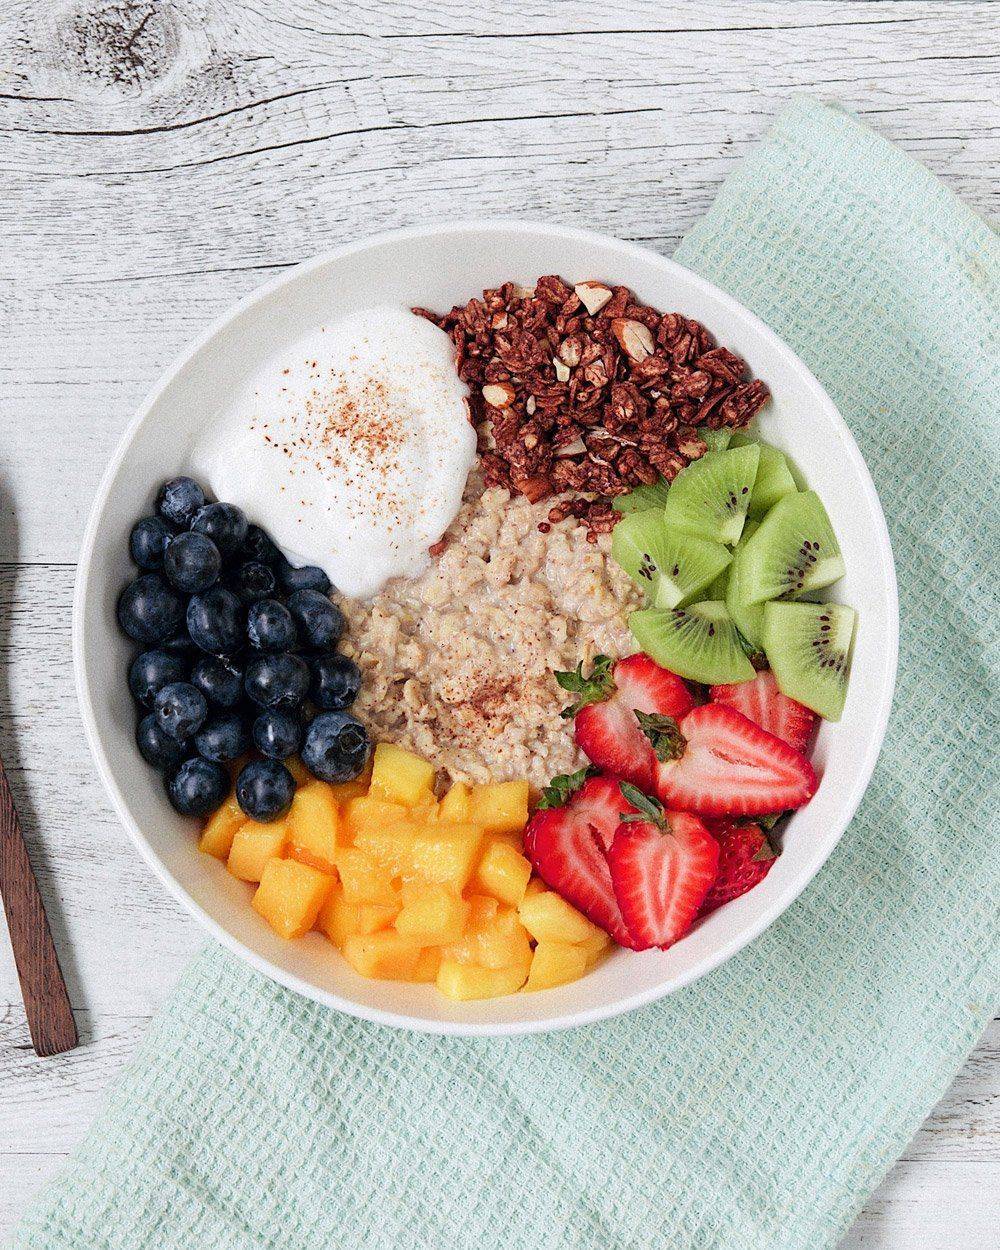 Диетический завтрак: что есть при правильном питании для похудения, варианты низкокалорийных, здоровых блюд, чем позавтракать – варианты на неделю